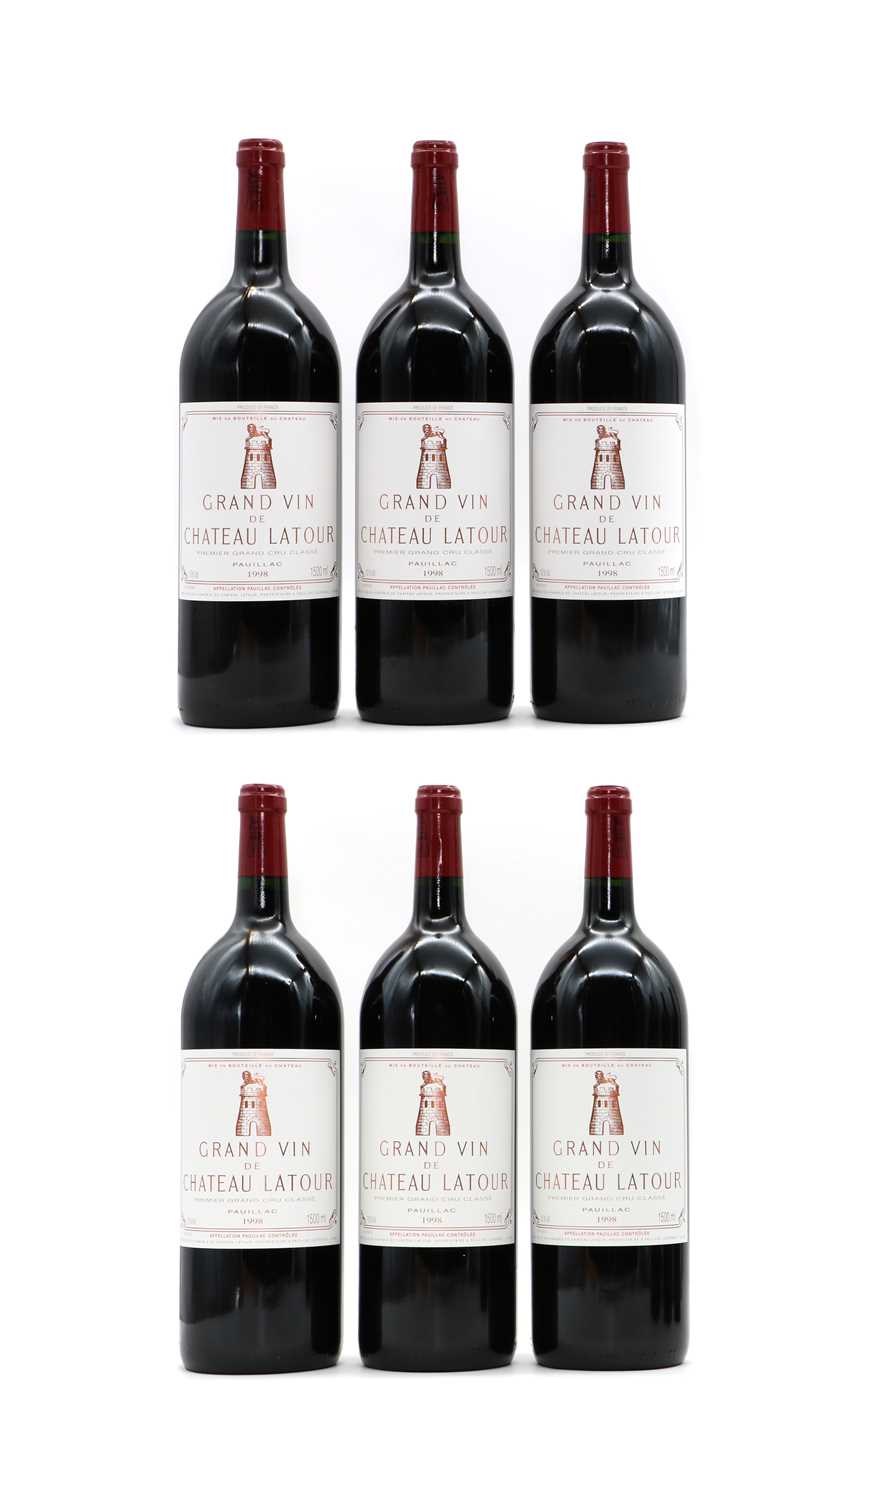 Lot 149 - Chateau Latour, Grand vin de Latour, 1998, (6 magnums, OWC)